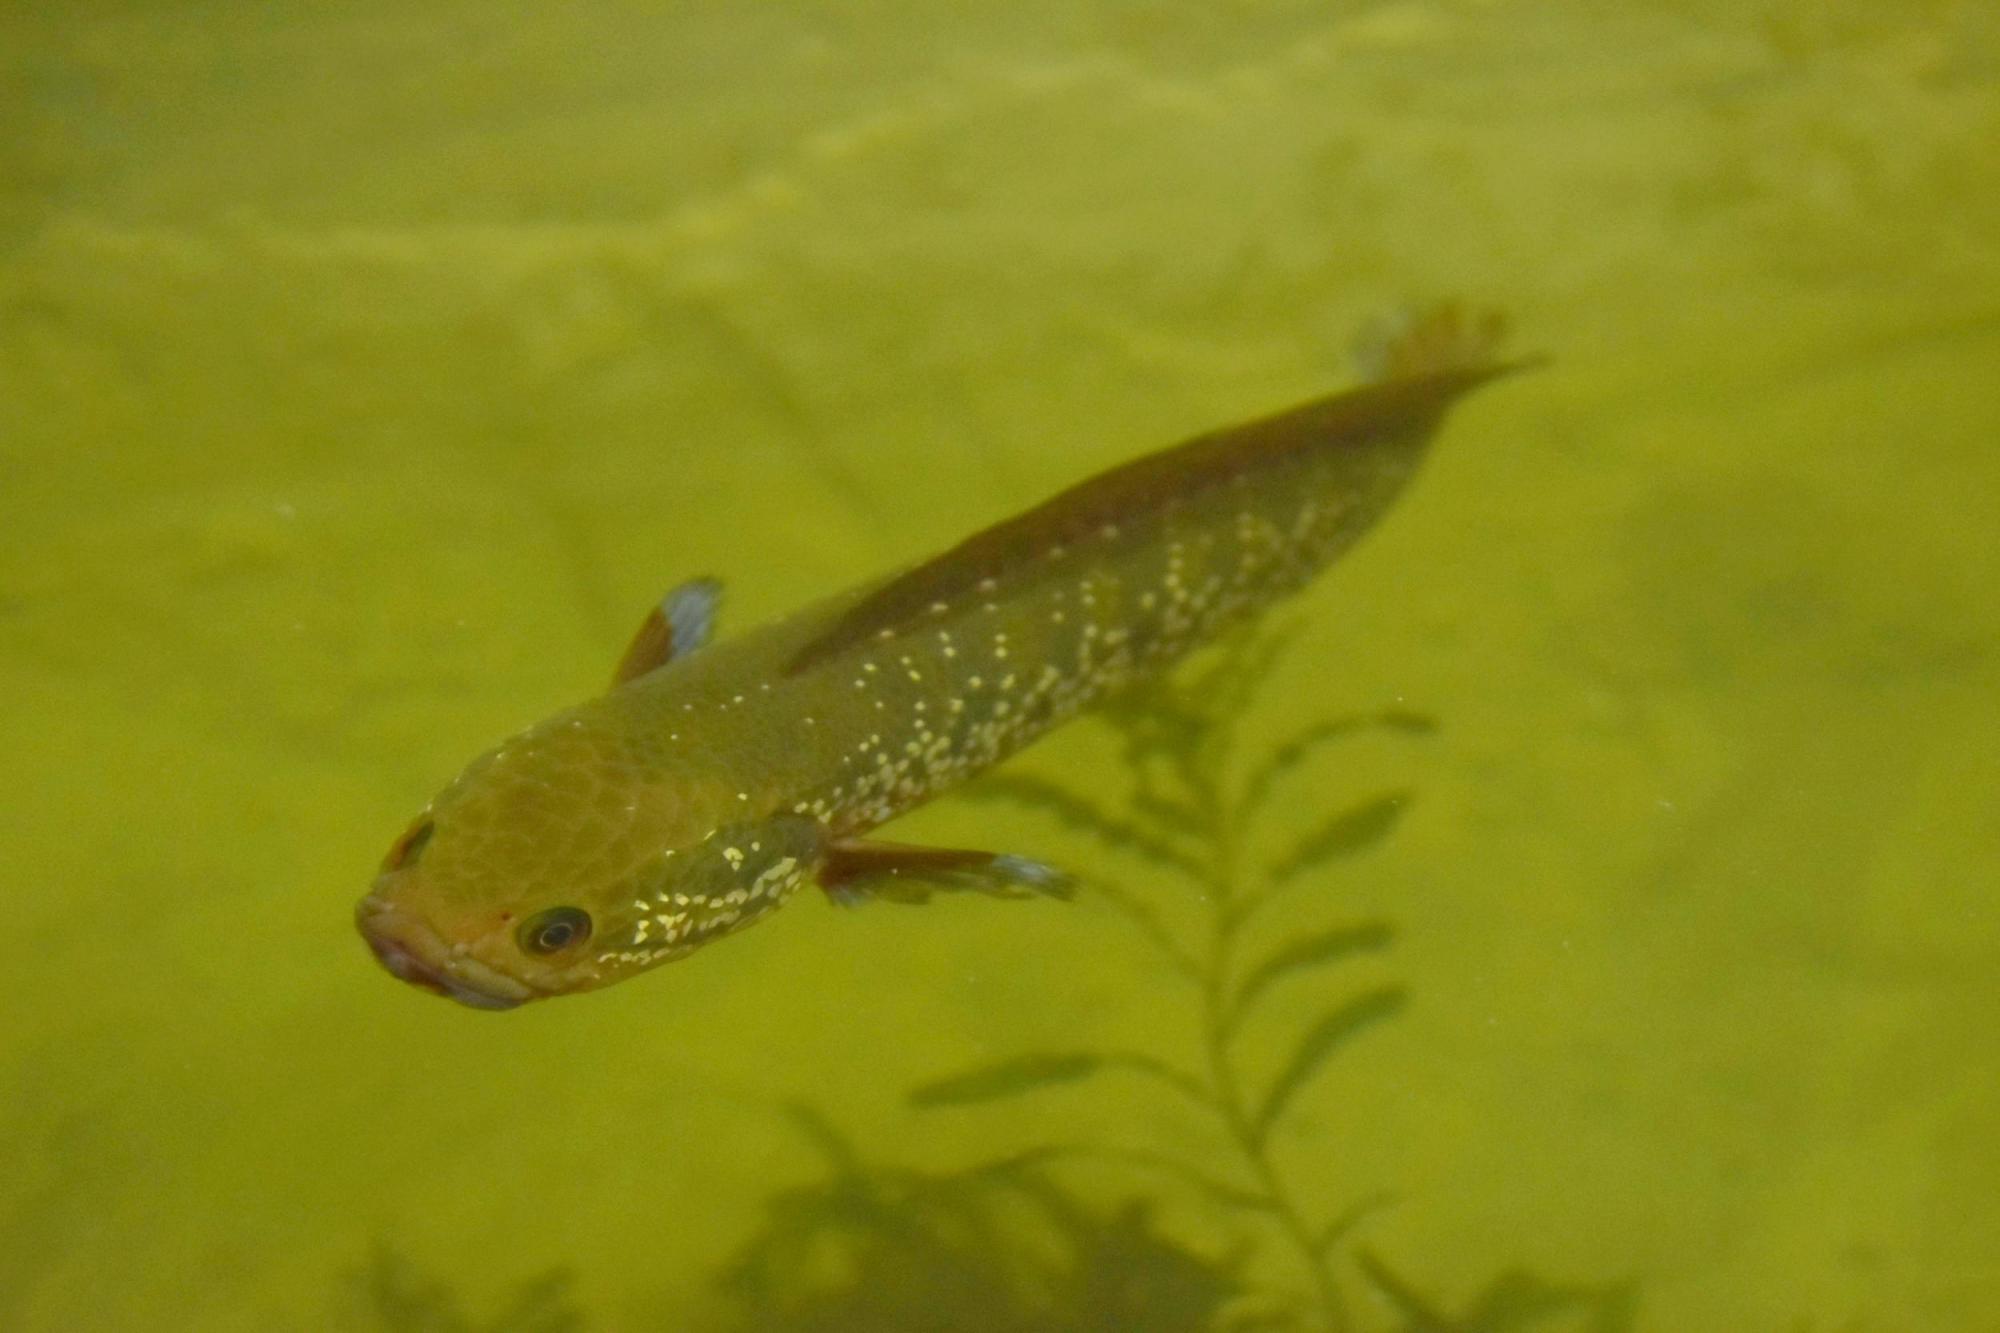 江苏现奇怪蛇鱼,又是一入侵物种,专家:放心食用